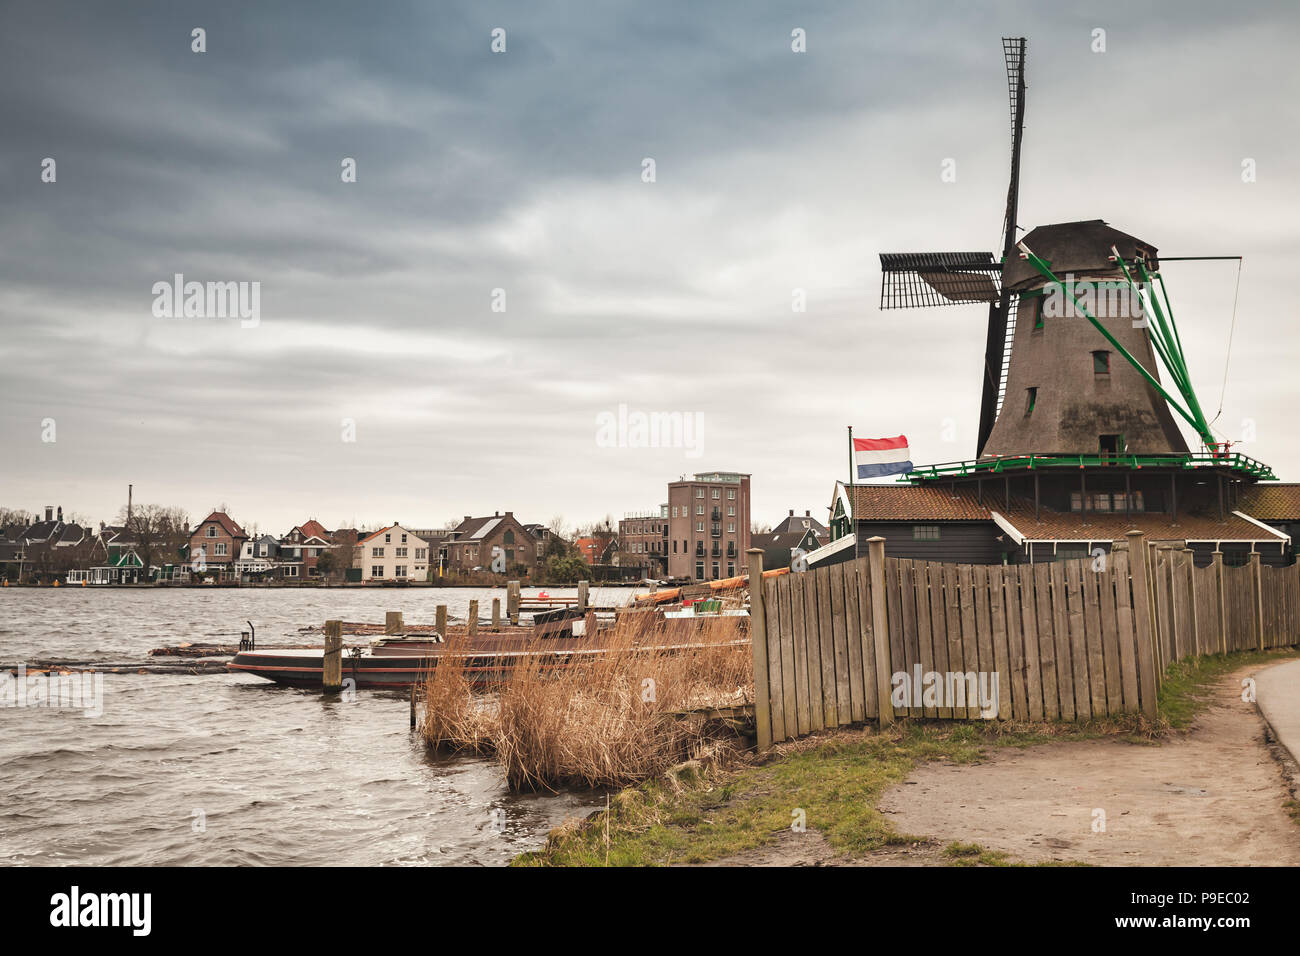 Mühle am Fluss Küste, Zaanse Schans Stadt, beliebten touristischen Attraktionen der Niederlande. Vorort von Amsterdam Stockfoto